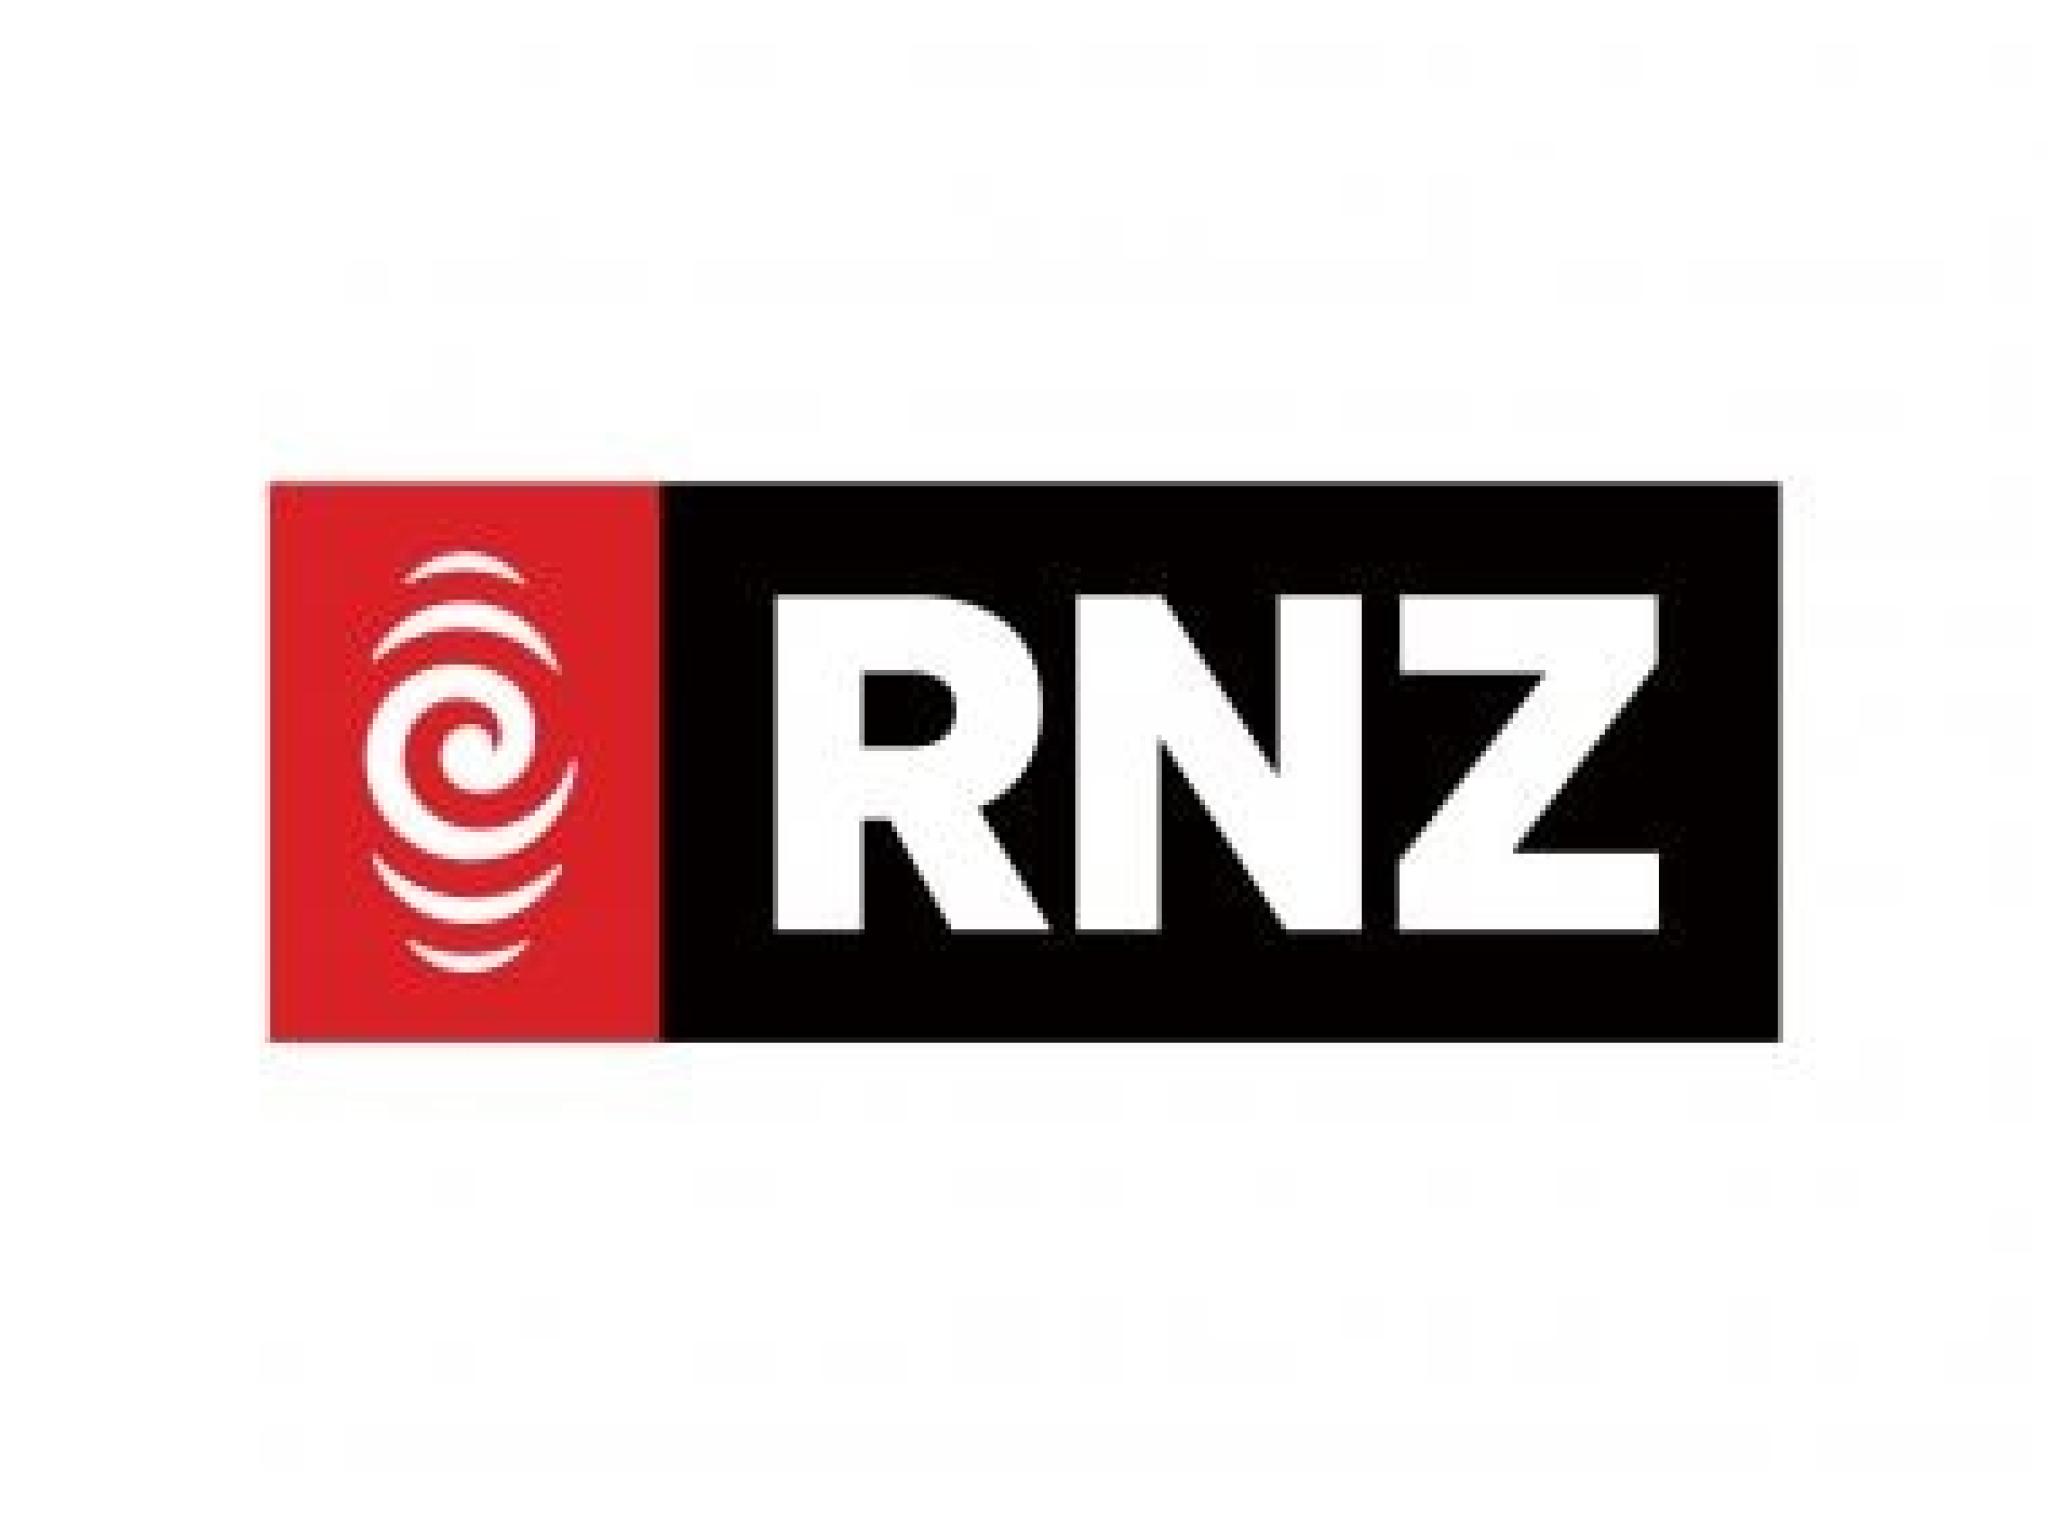 RNZ logo